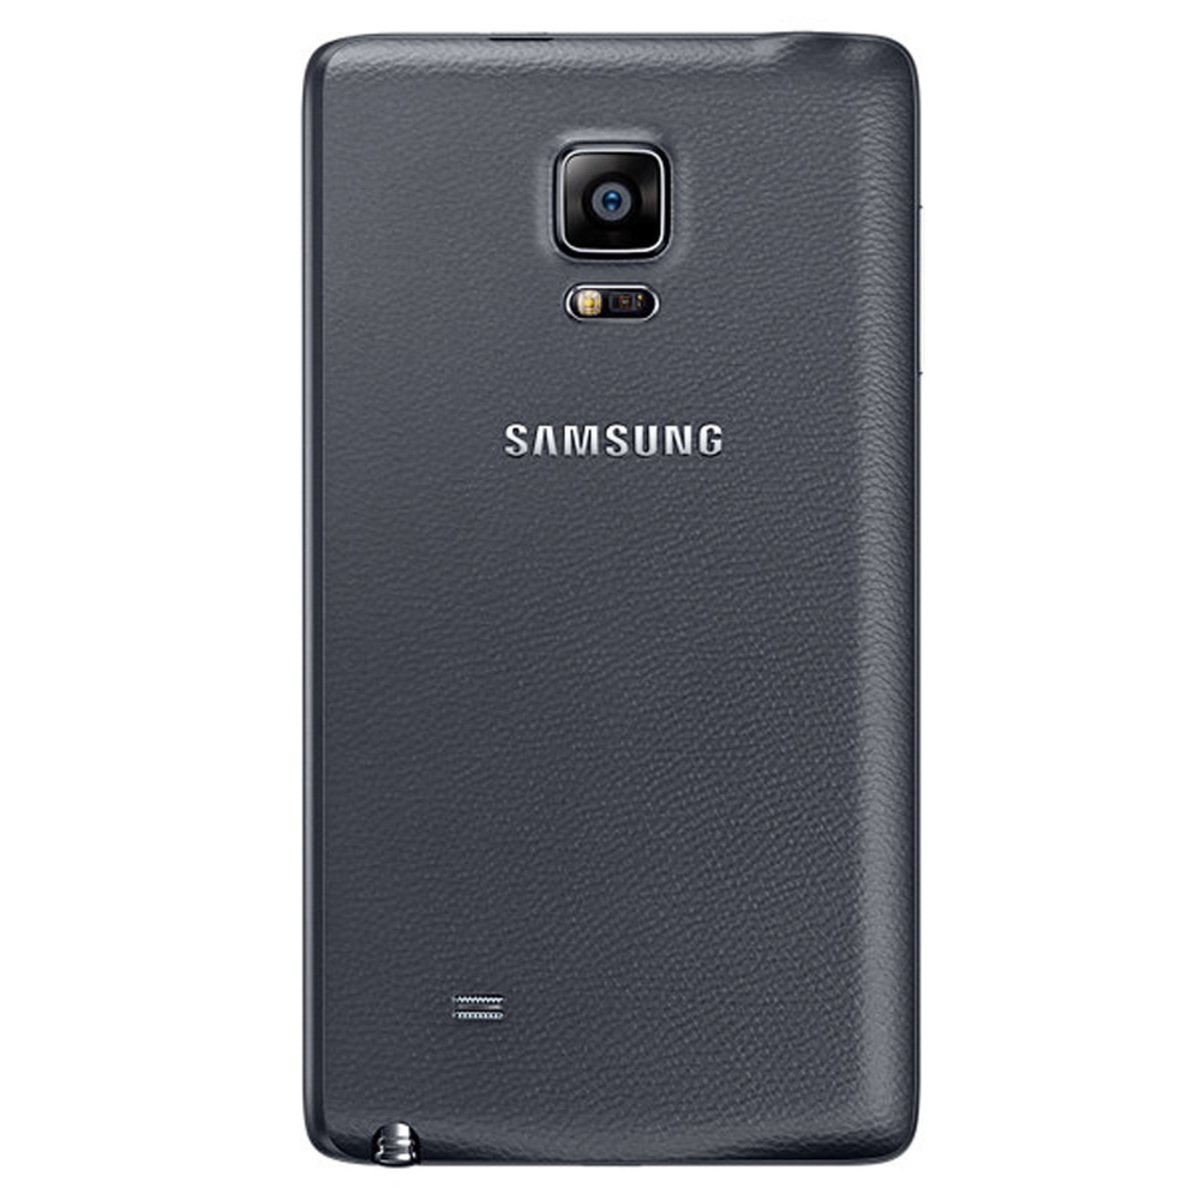 Samsung Galaxy Note Edge SM-N915F Black